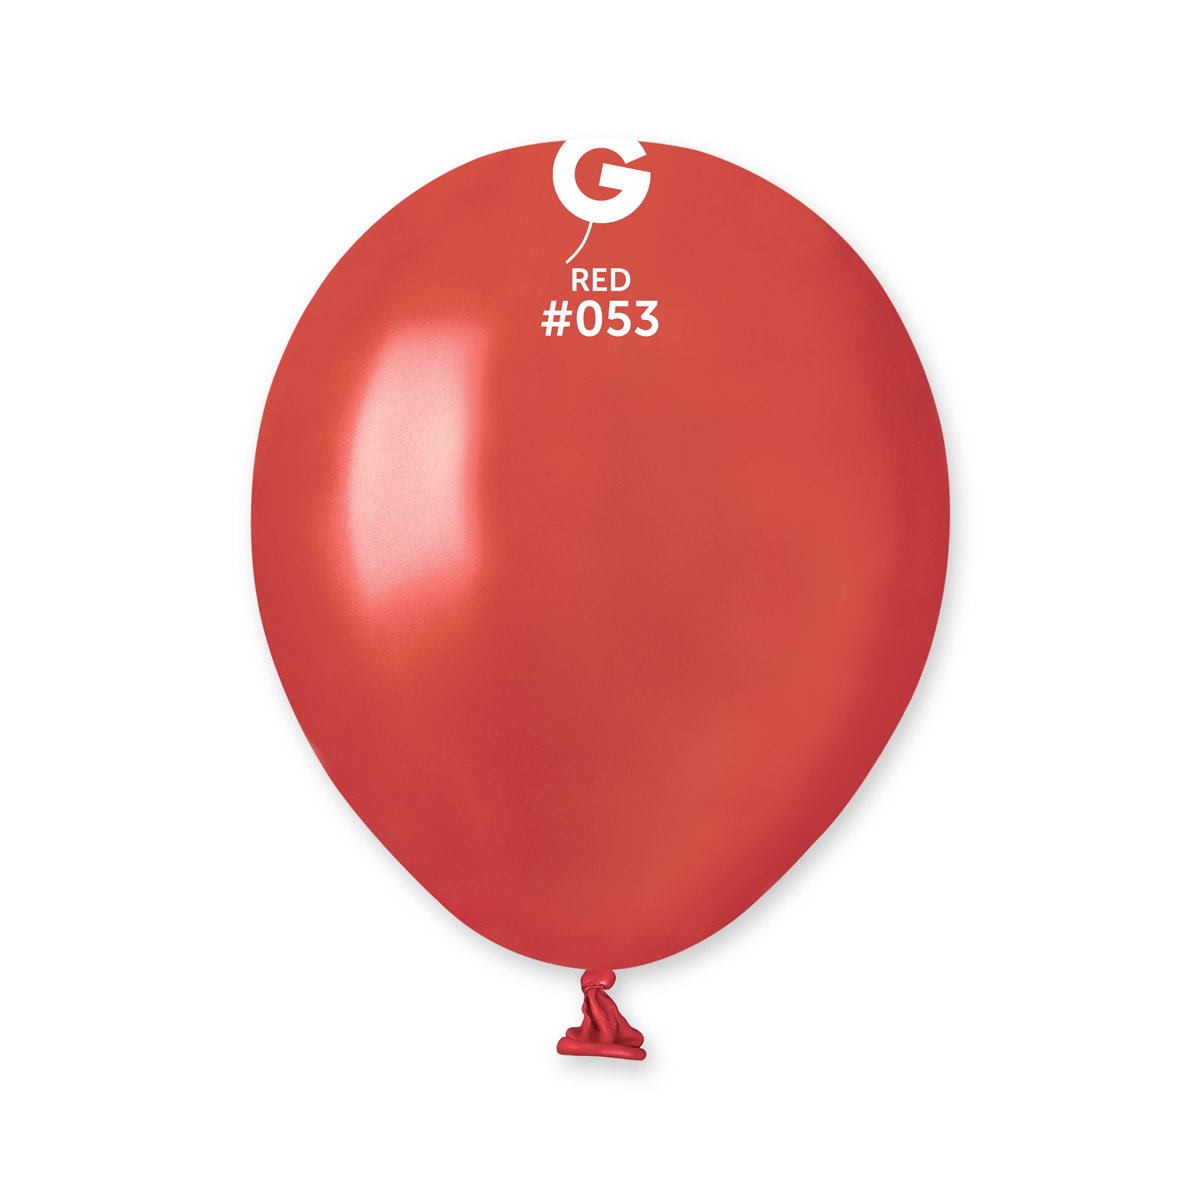 19 Multi-Balloon Red Balloon Dog Foil Balloon  Bargain Balloons - Mylar  Balloons and Foil Balloons